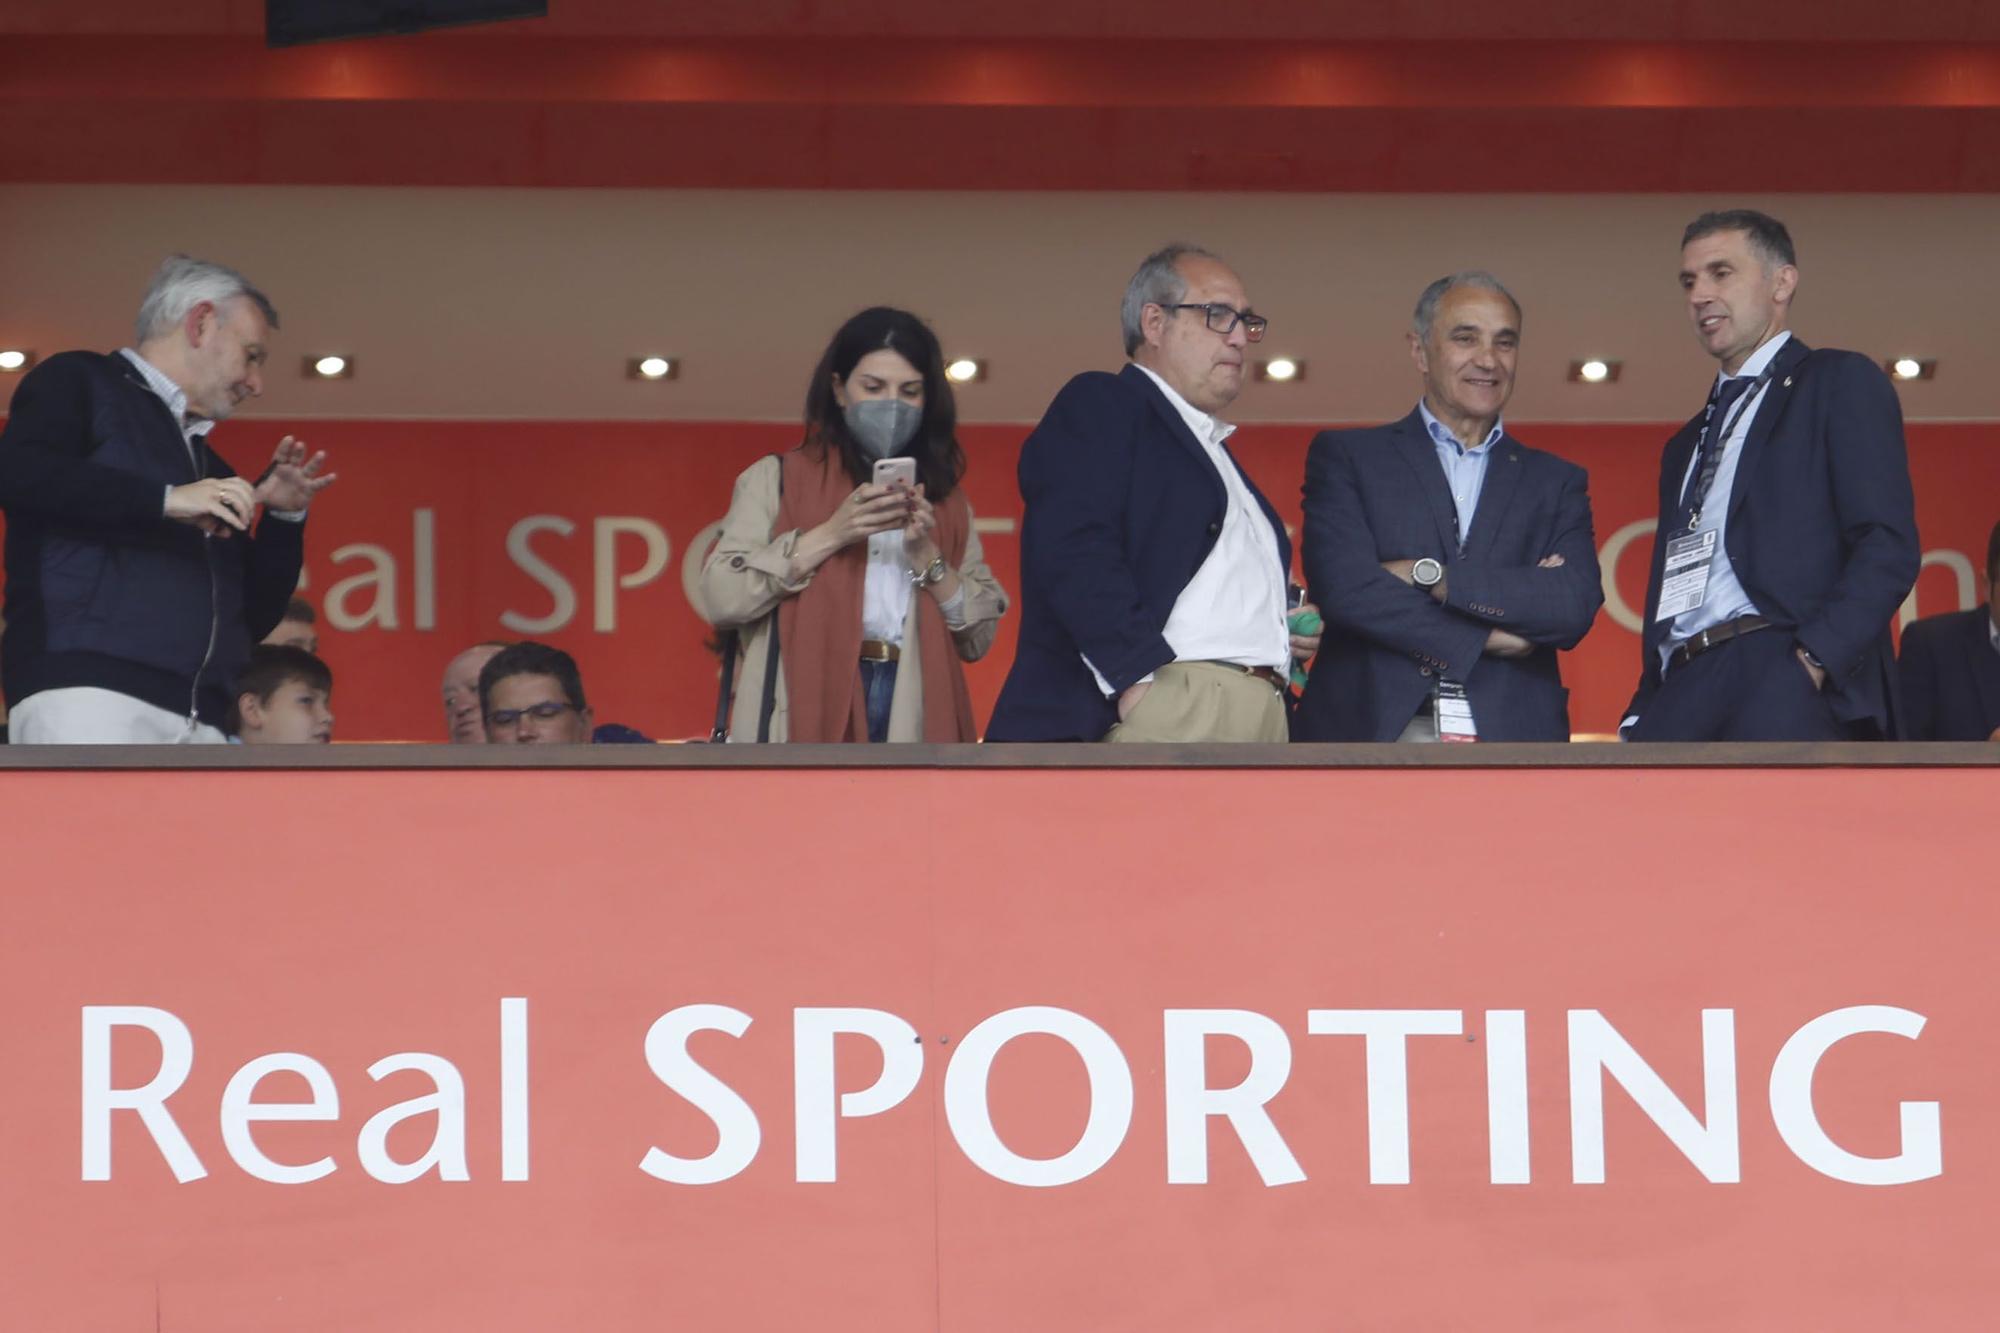 Las mejores imágenes de la victoria del Sporting ante el Girona